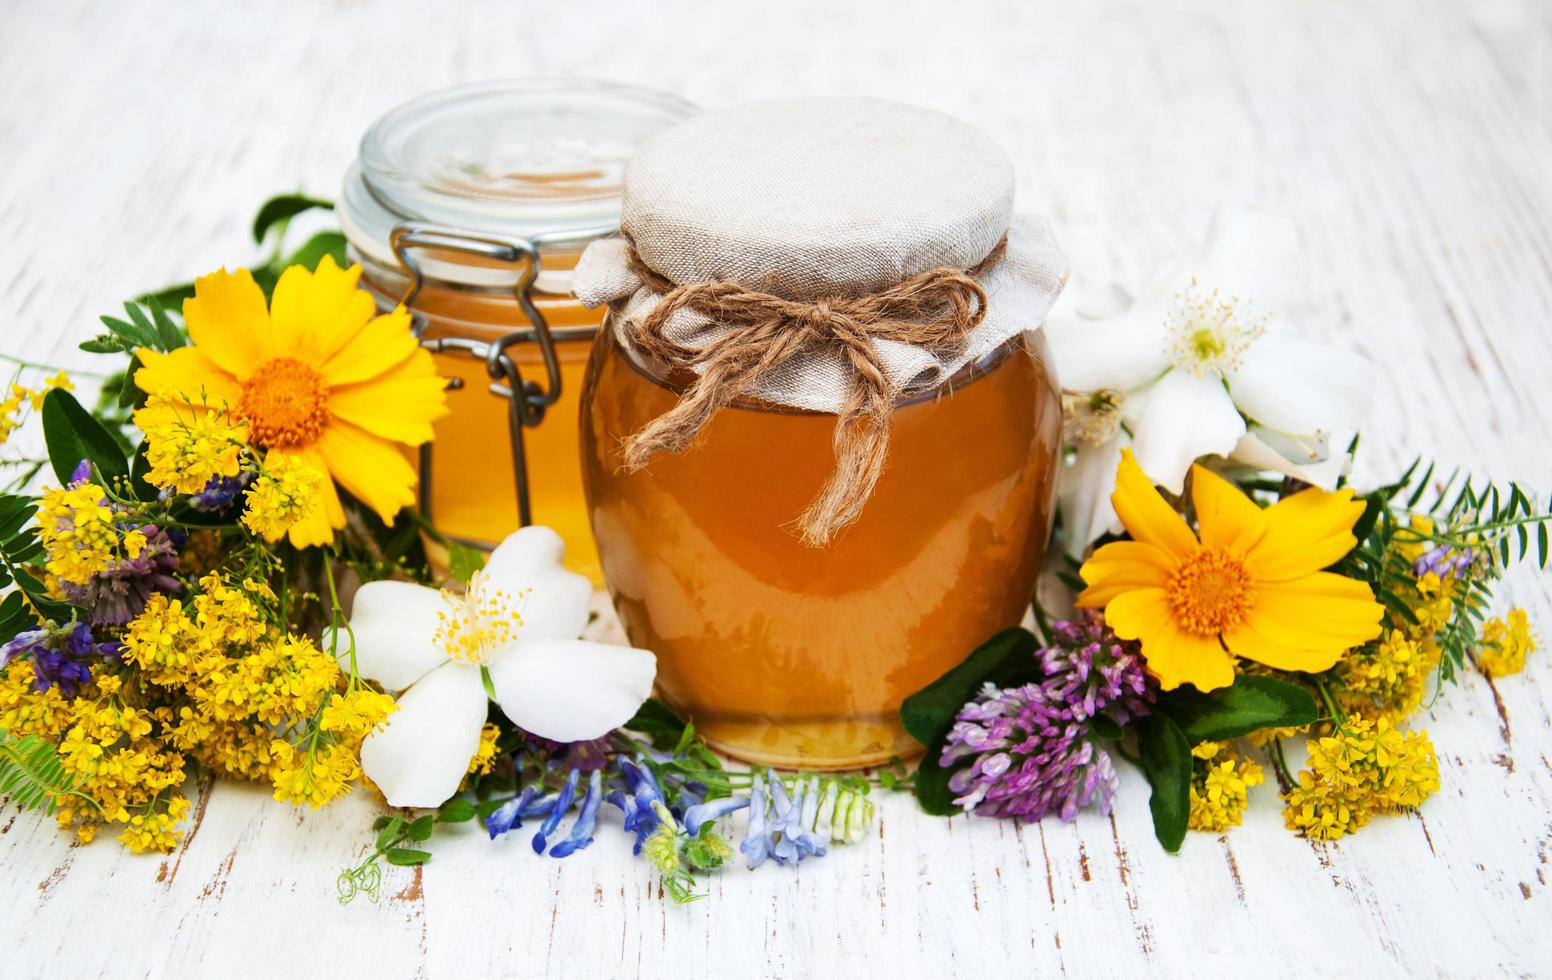 miel et fleurs sauvages sur fond de bois photo